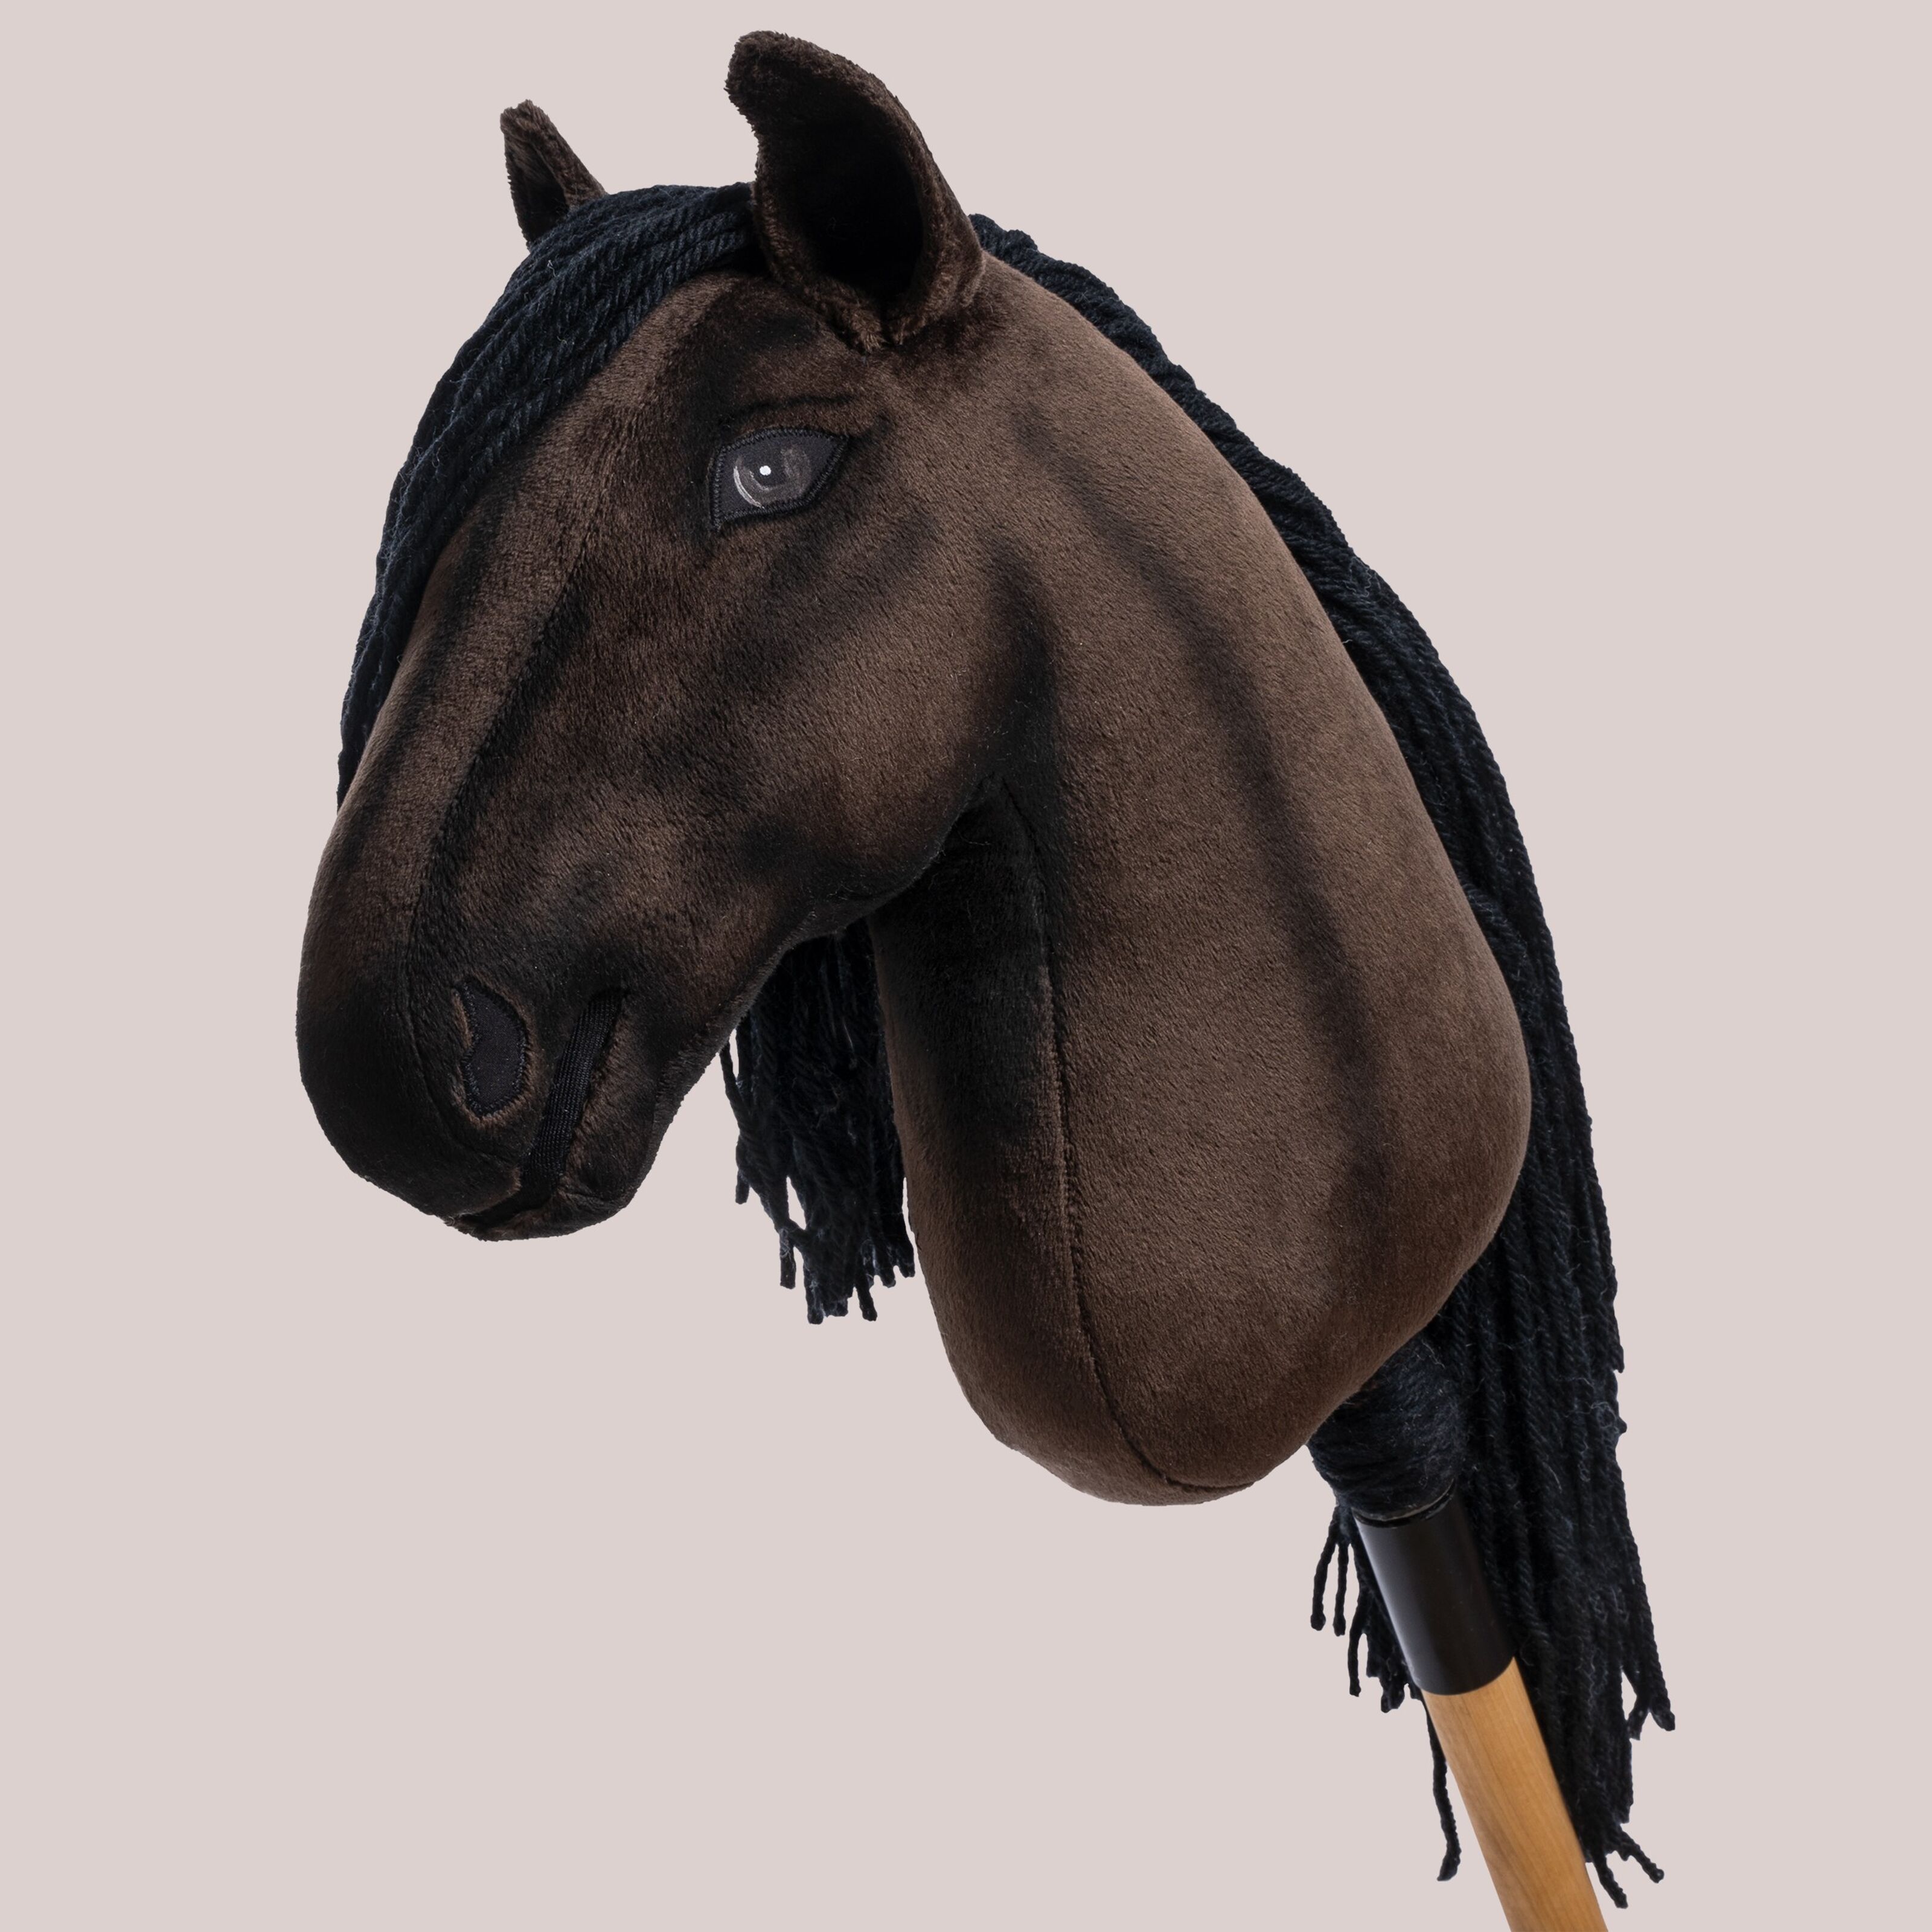 Compra Cavallo Finnhorse Fauna - M Allround all'ingrosso